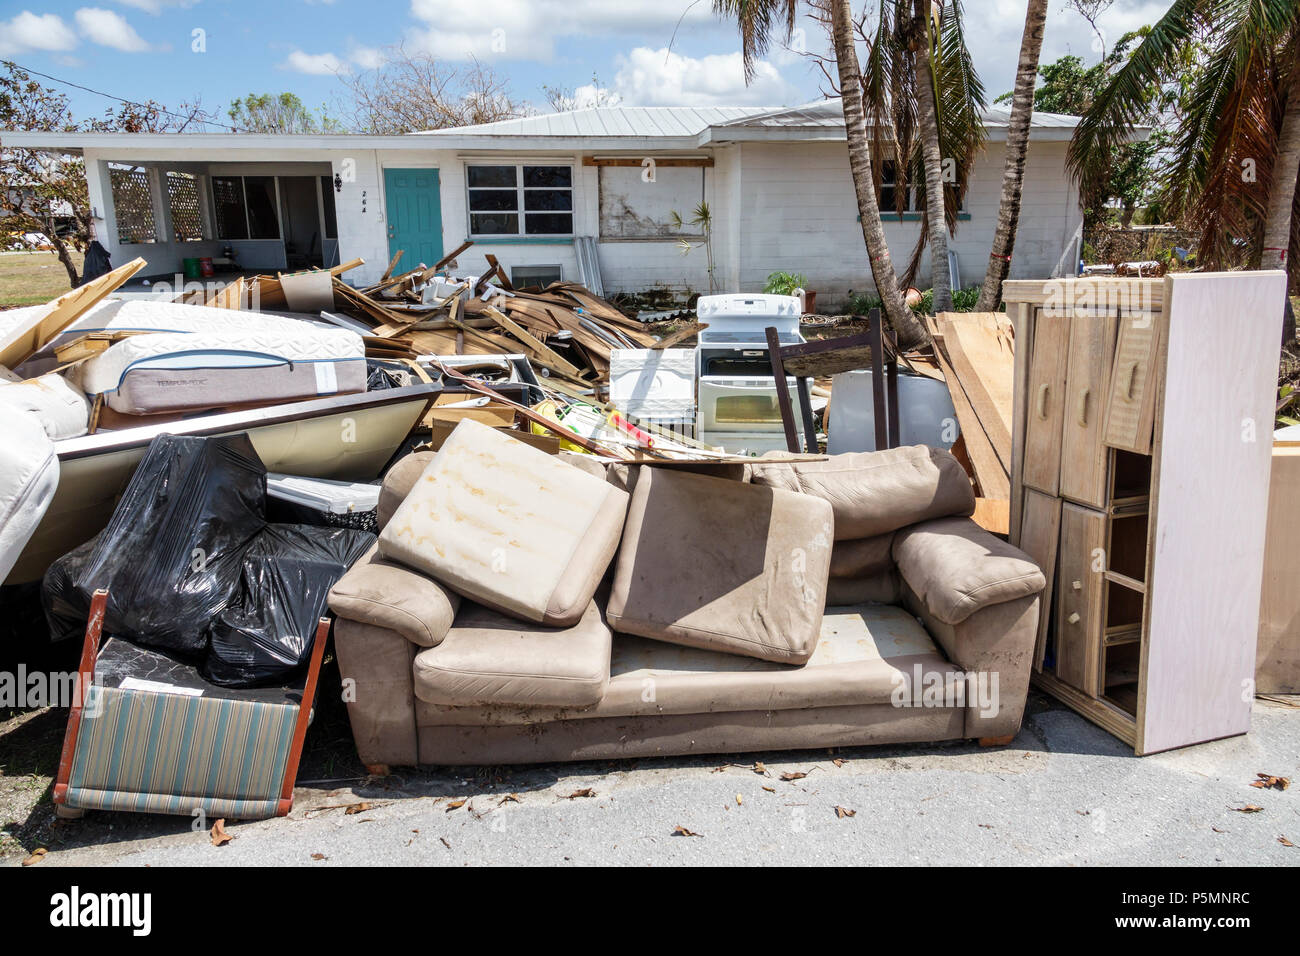 Everglades City Florida,après l'ouragan Irma,maisons résidences,cour avant,nettoyage de reprise après sinistre de tempête,inondation dégâts destruction après coup Banque D'Images